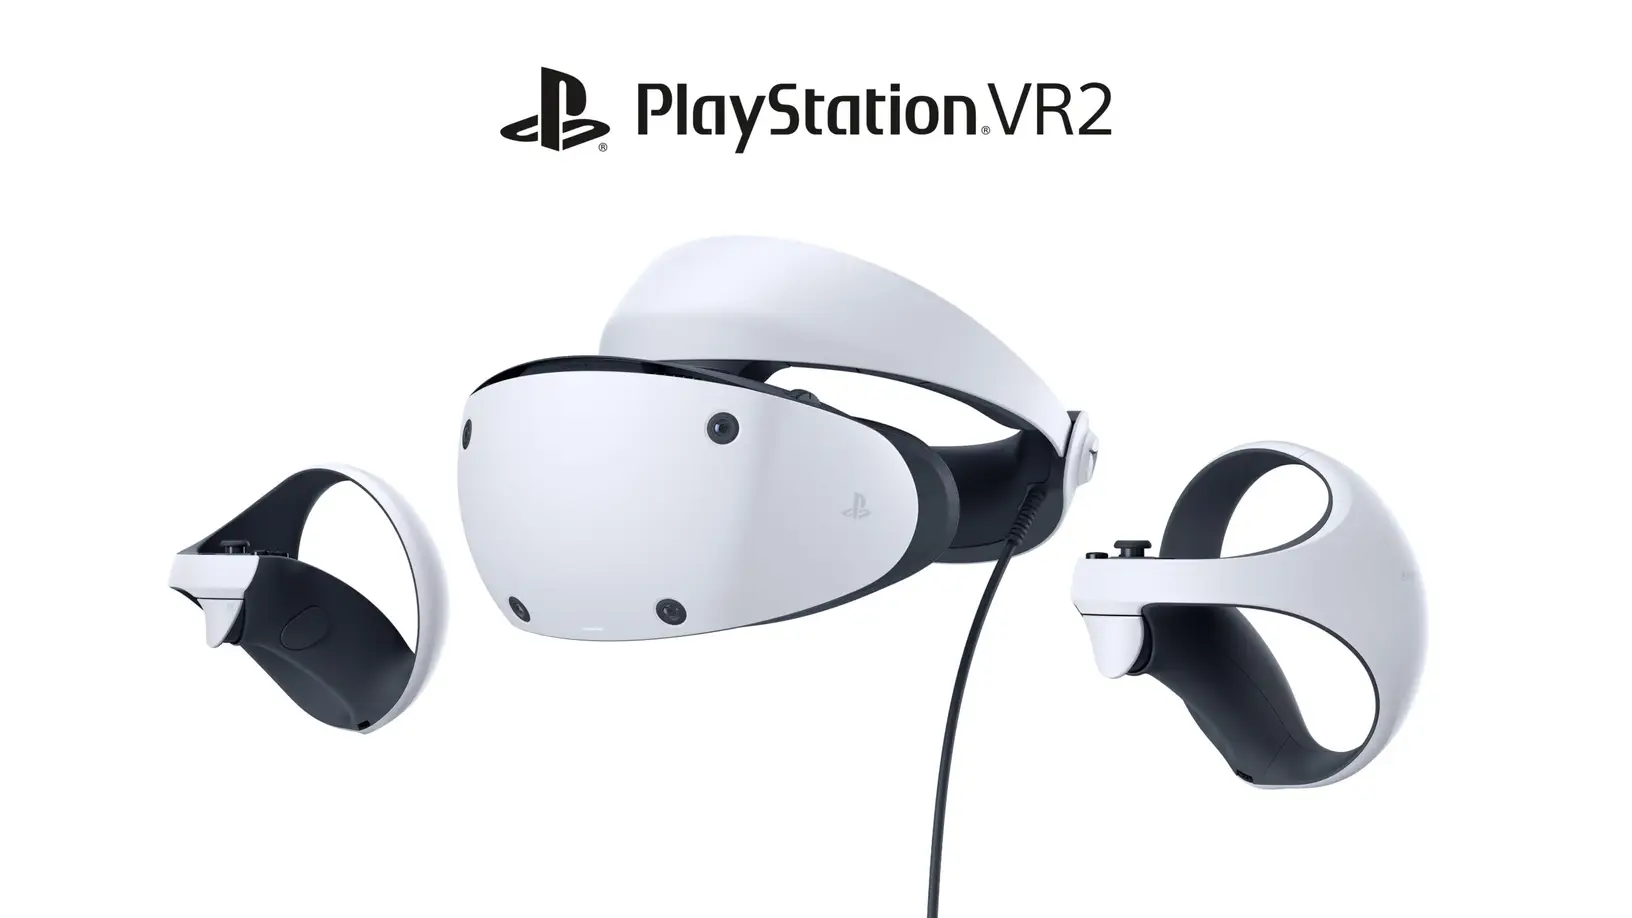 Sony tiết lộ những hình ảnh đầu tiên về PlayStation VR 2